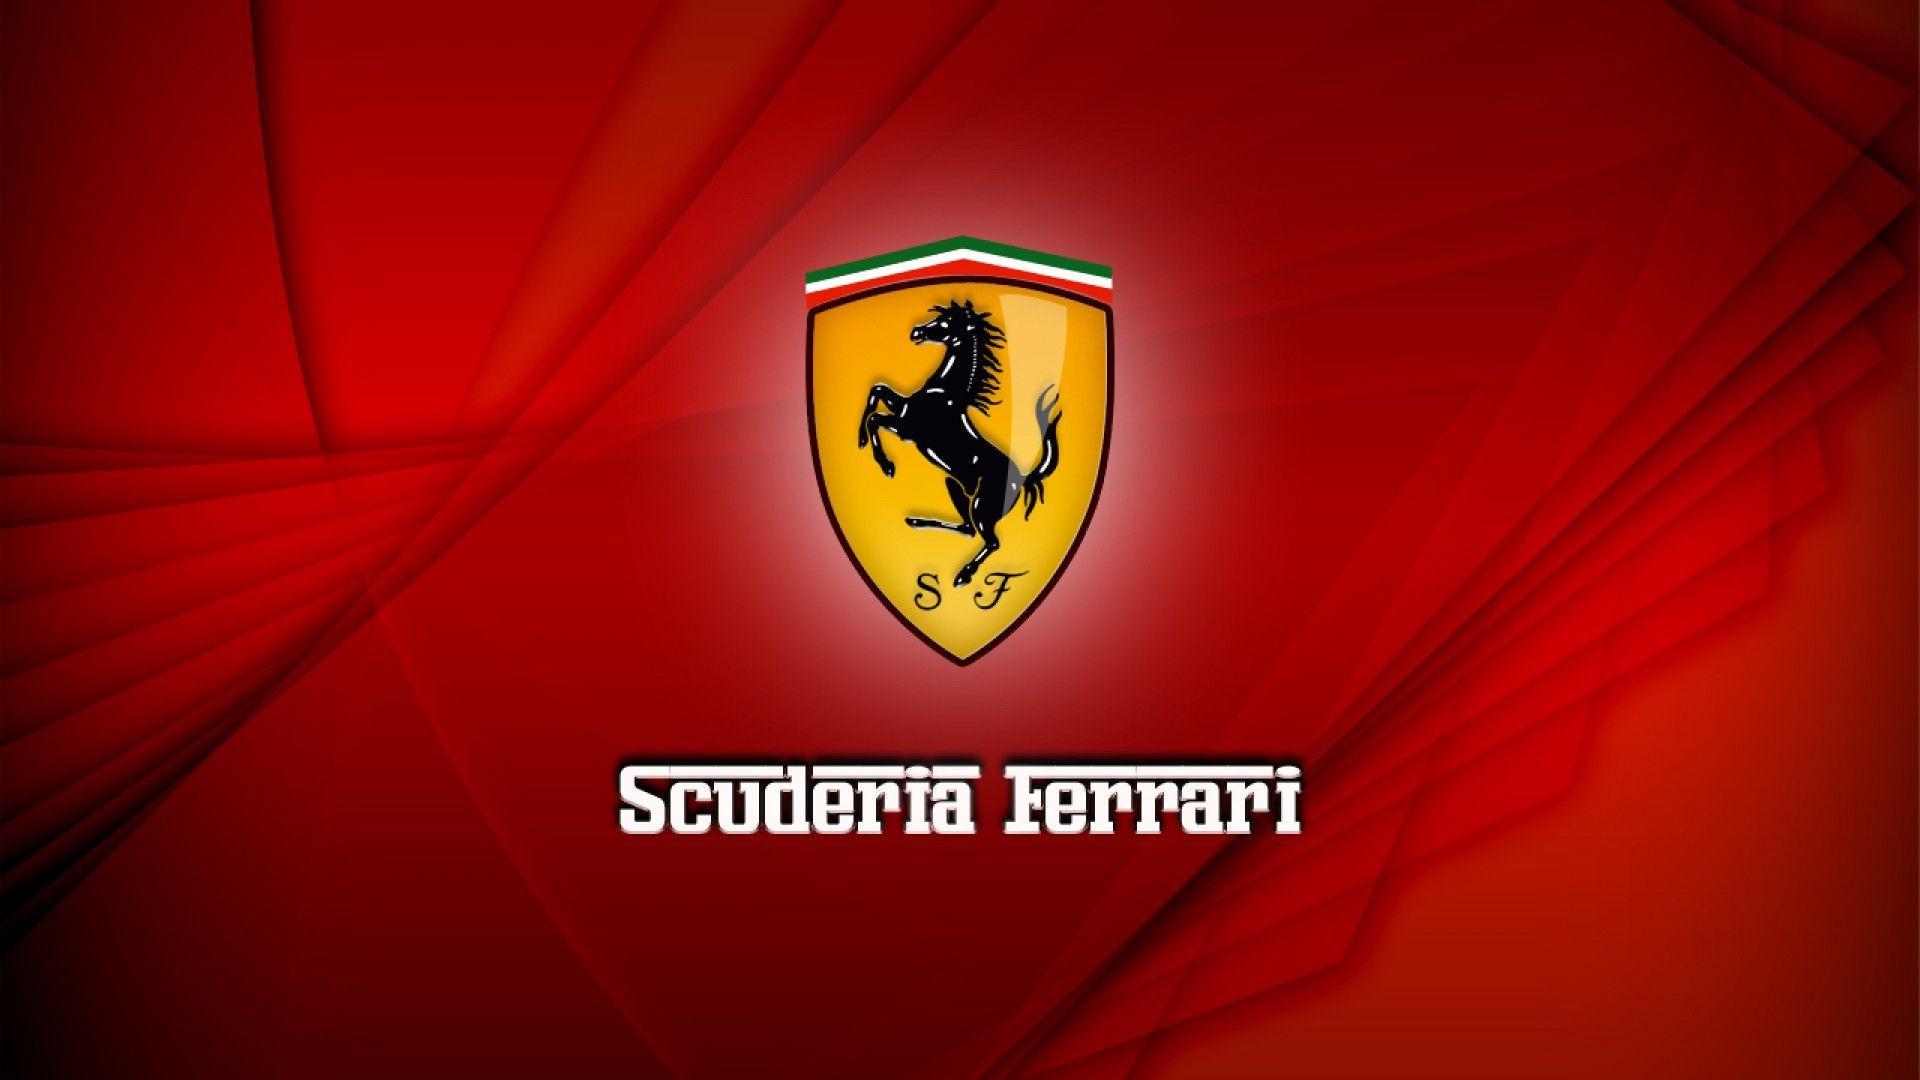 Ferrari Wallpaper Hd: Ferrari Wallpaper Logo HD. .Ssofc